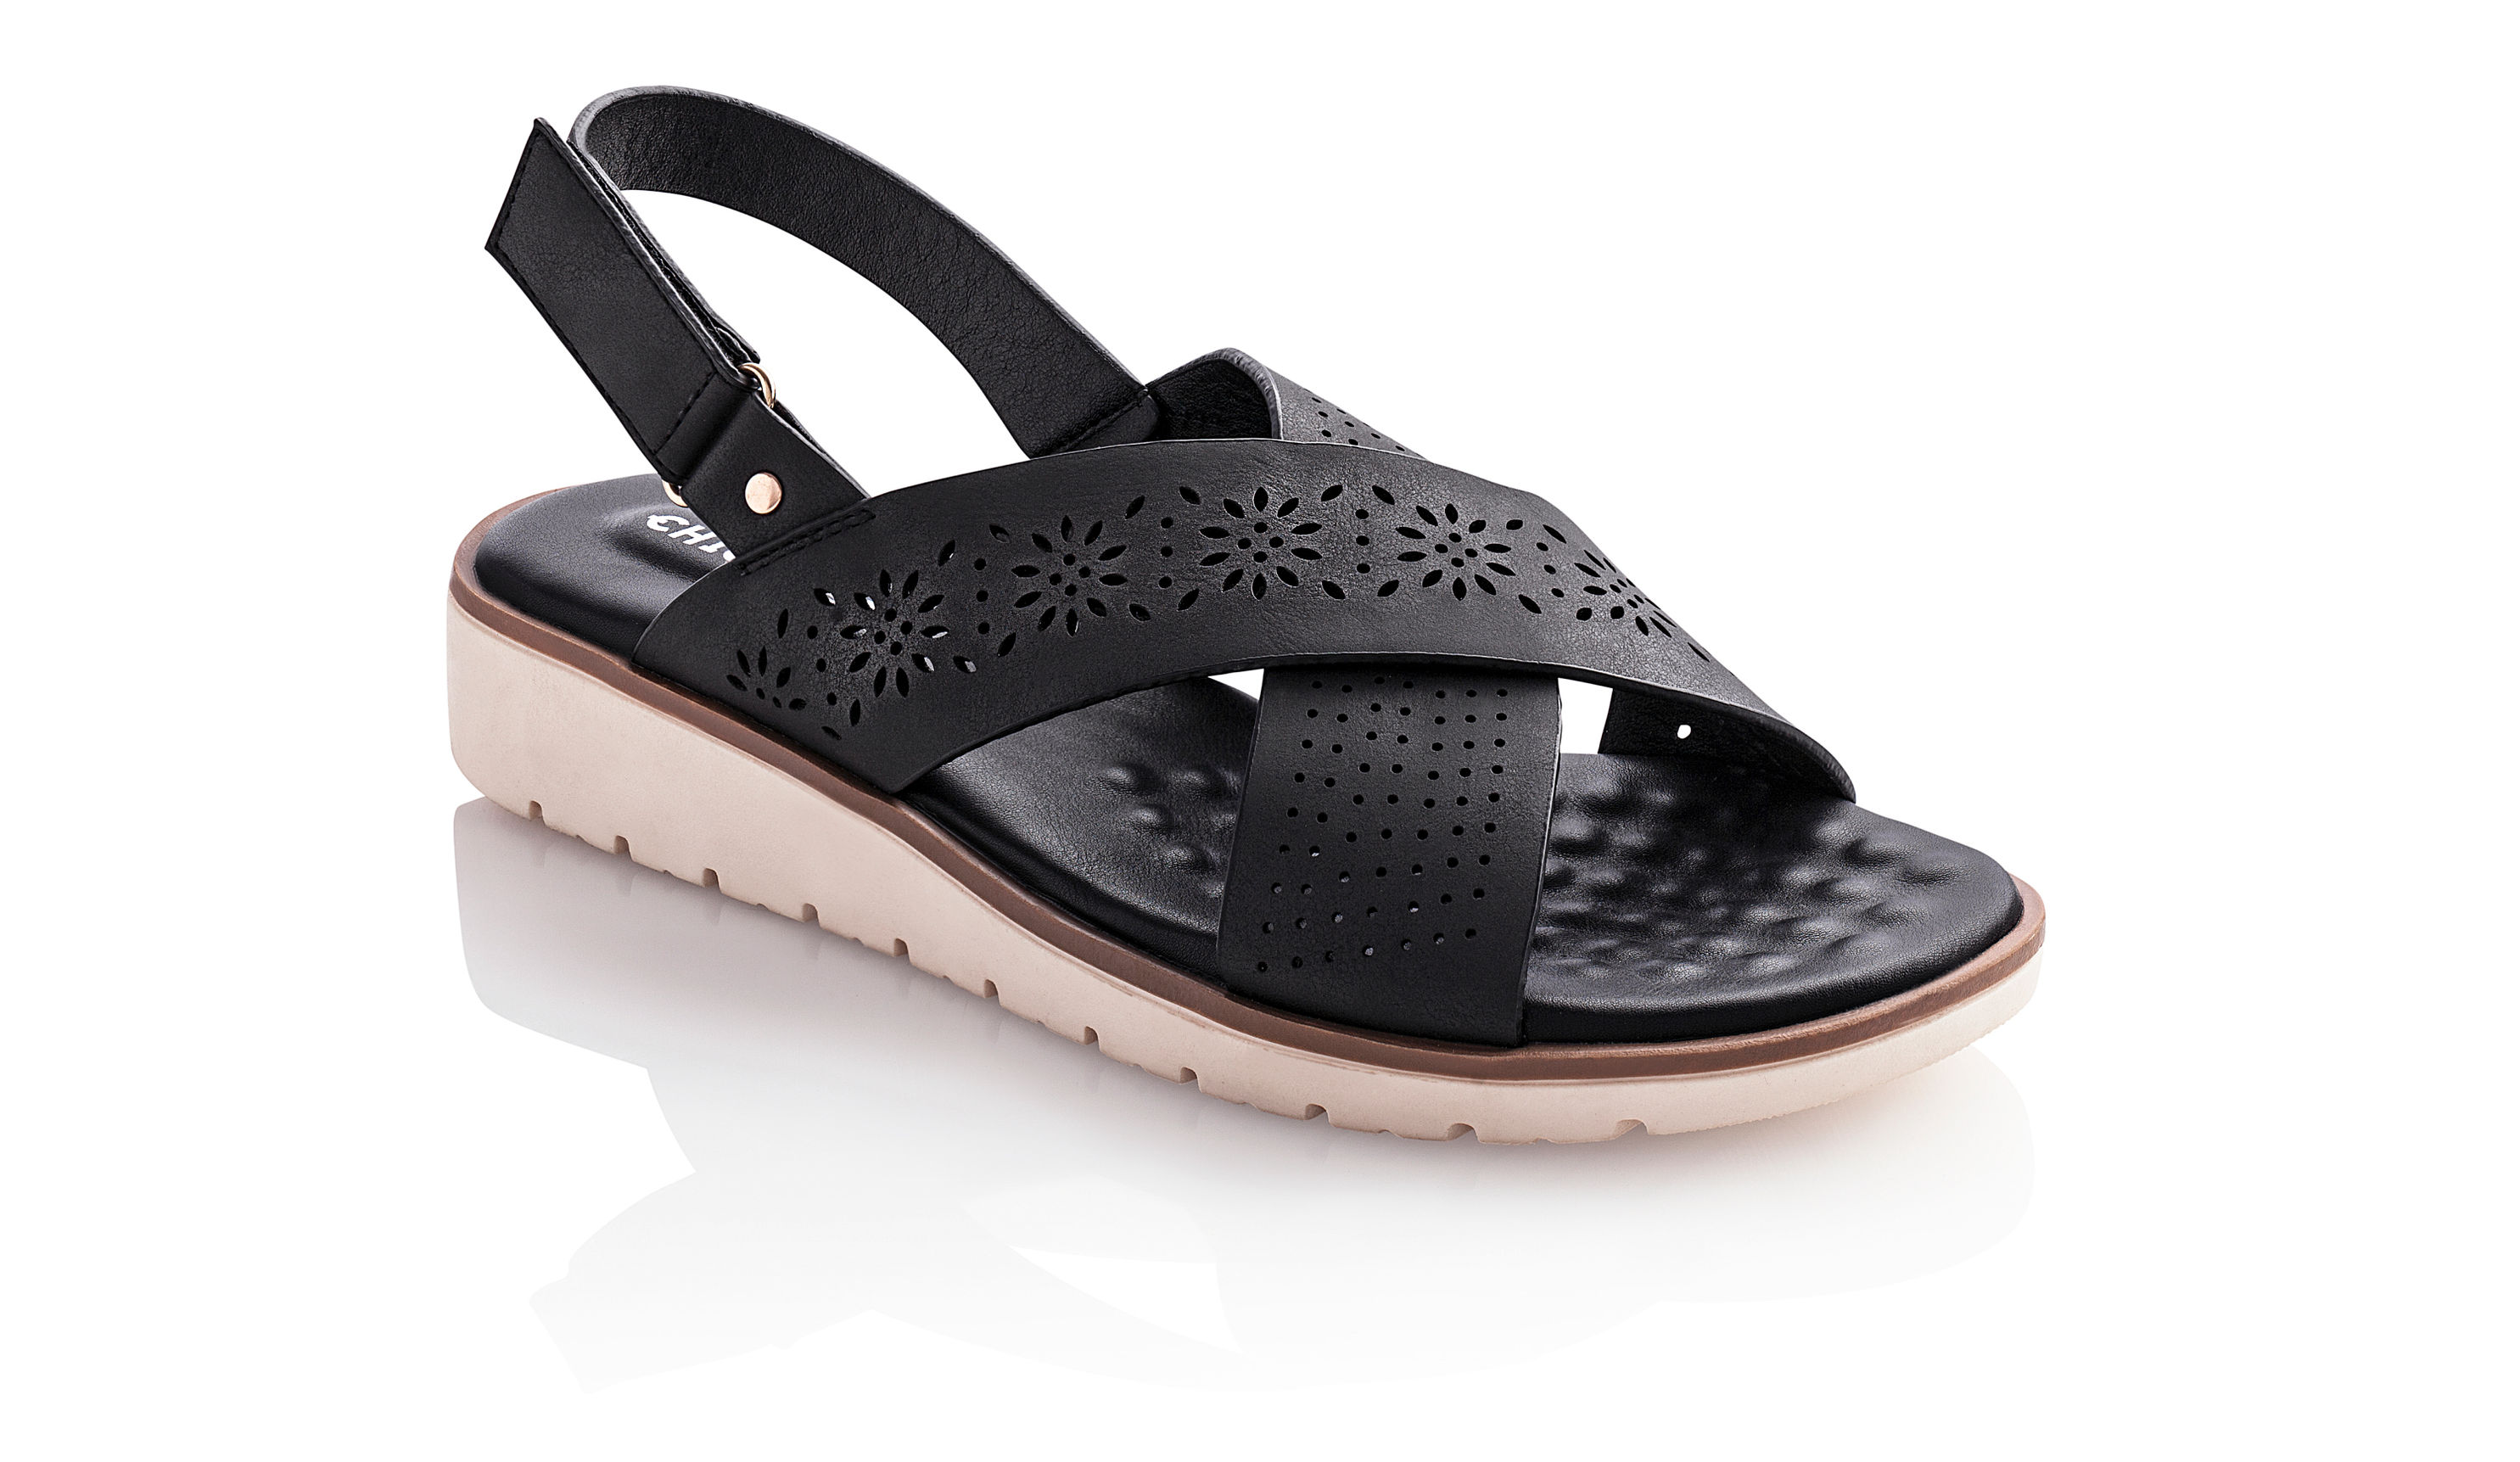 Chiemsee Sandale, schwarz Größe: 36 bestellen | Weltbild.de